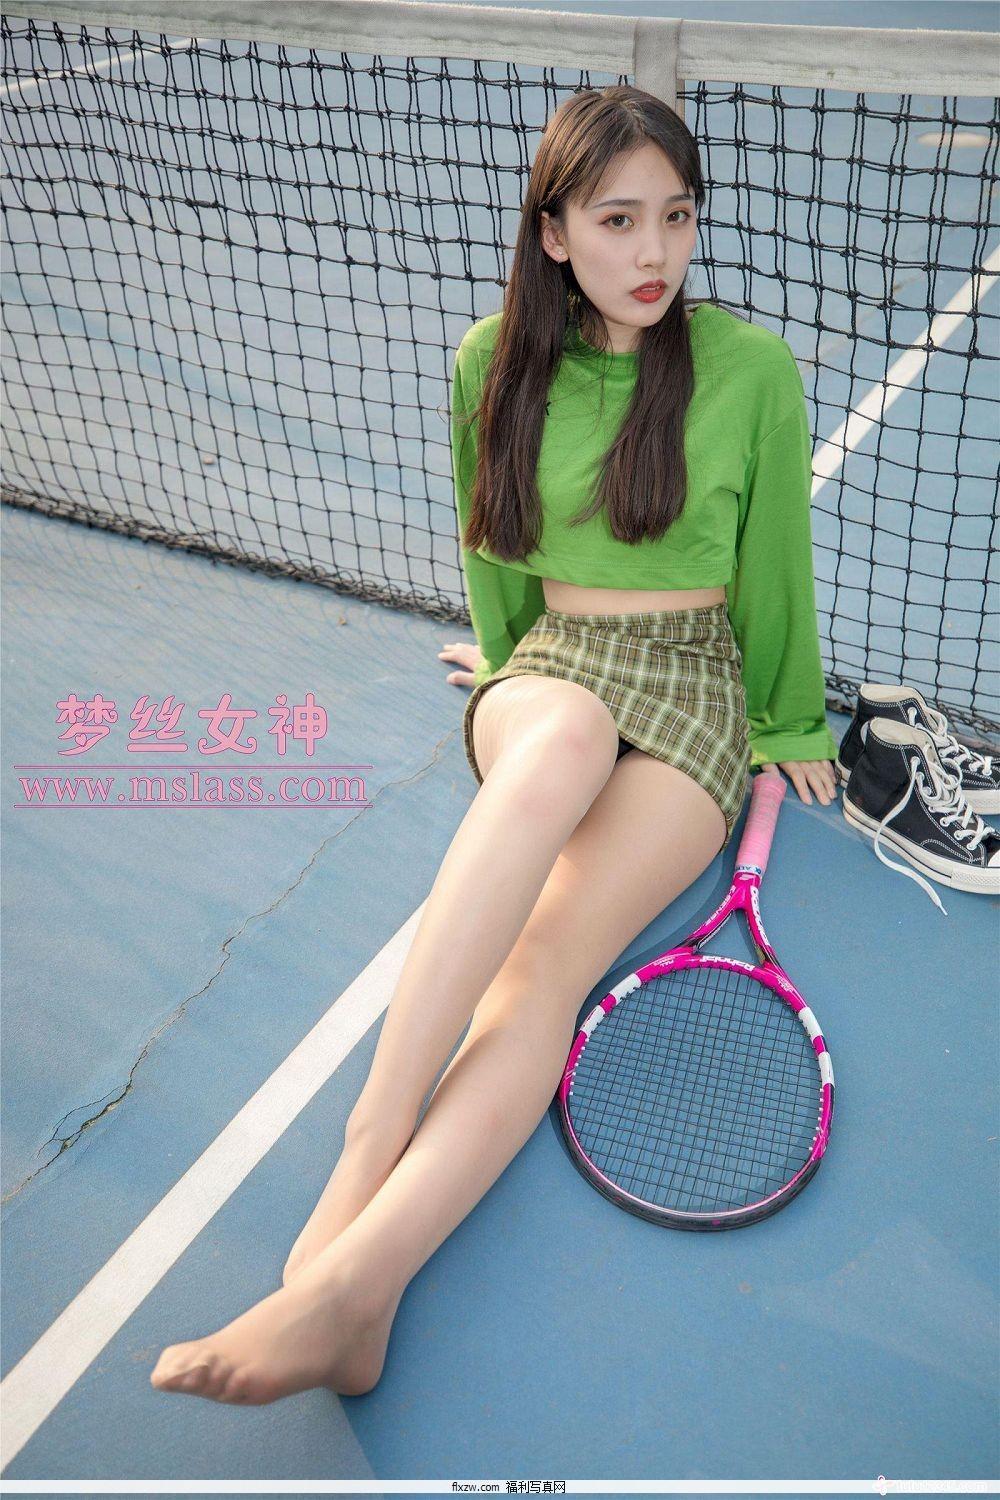 梦丝女神MSLASS - 香萱 网球少女(49)